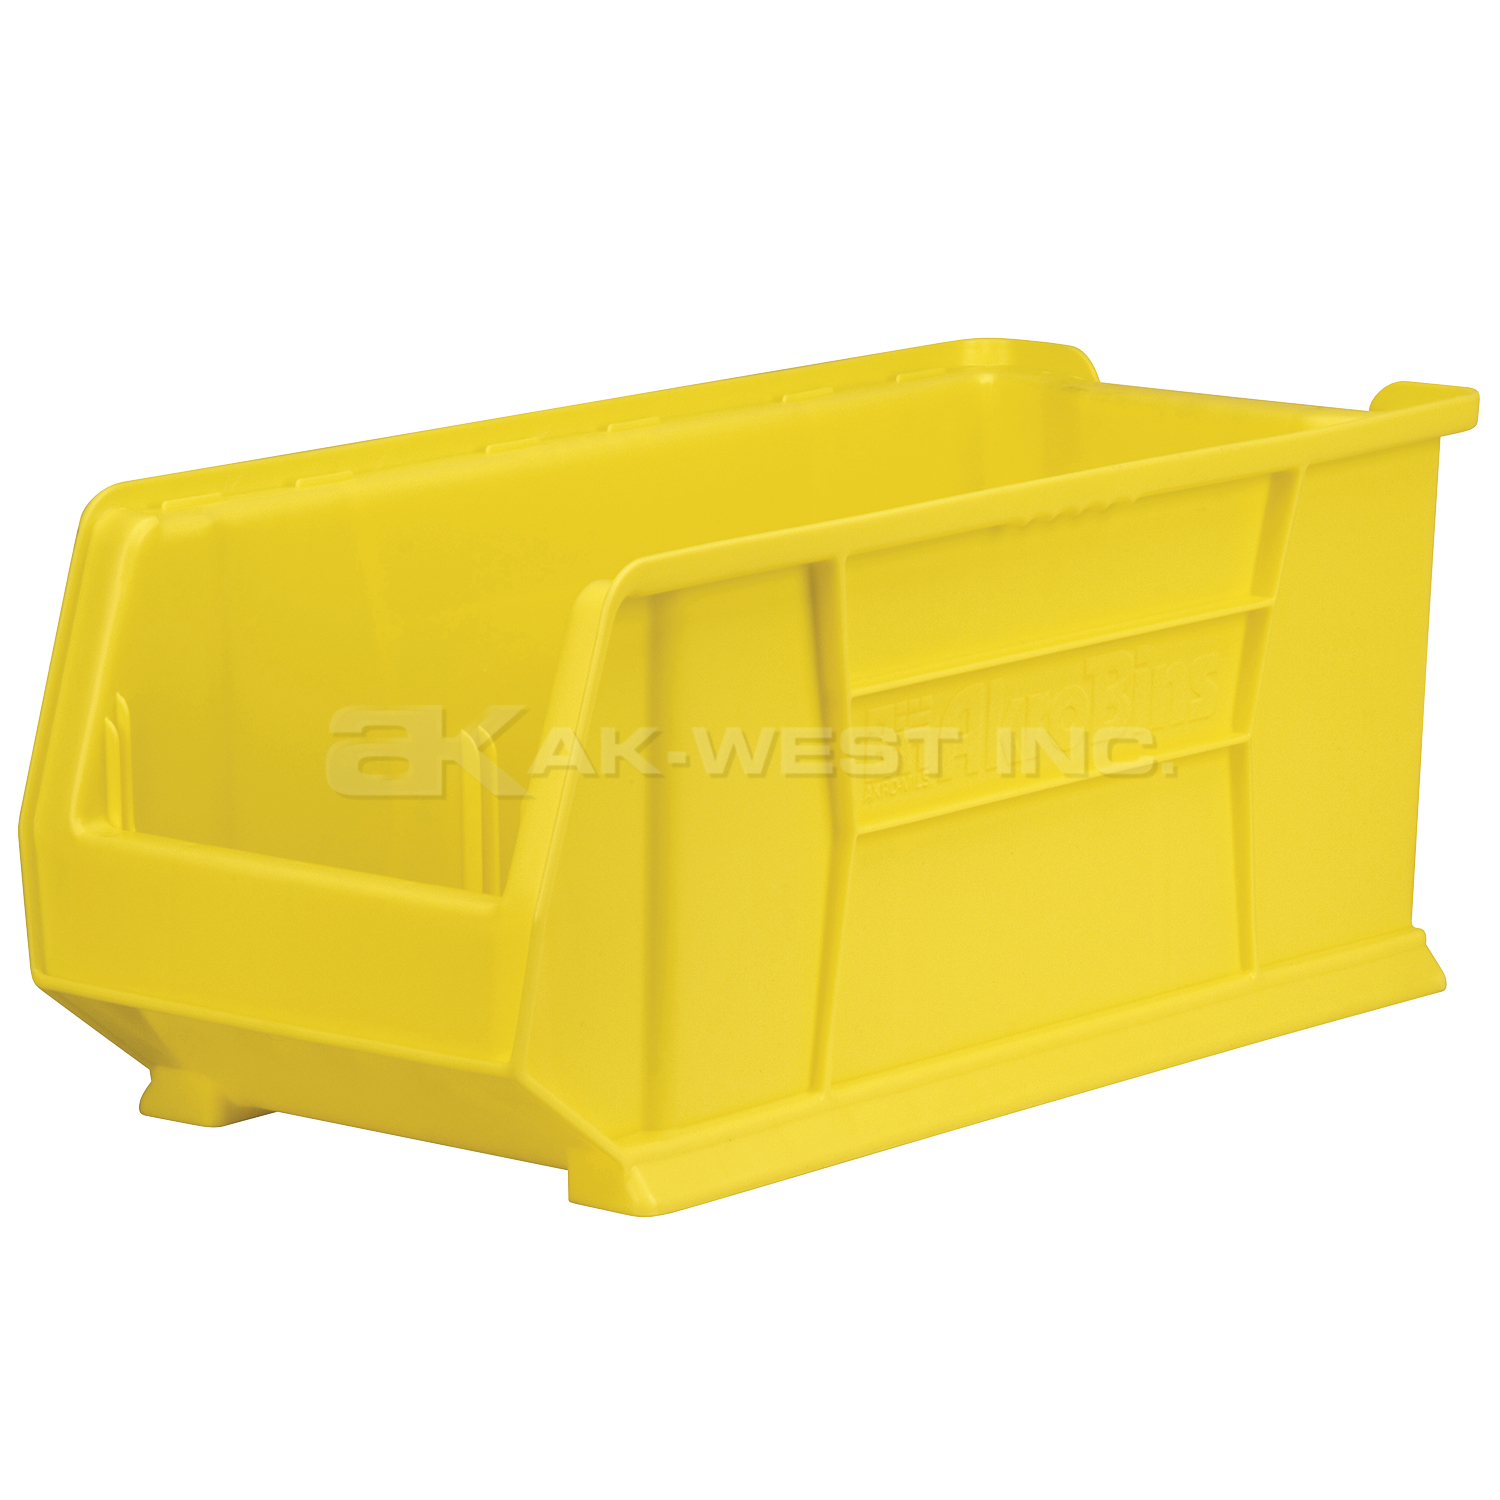 Yellow, 23-7/8" x 11" x 10" Stacking Shelf Bin (4 Per Carton)